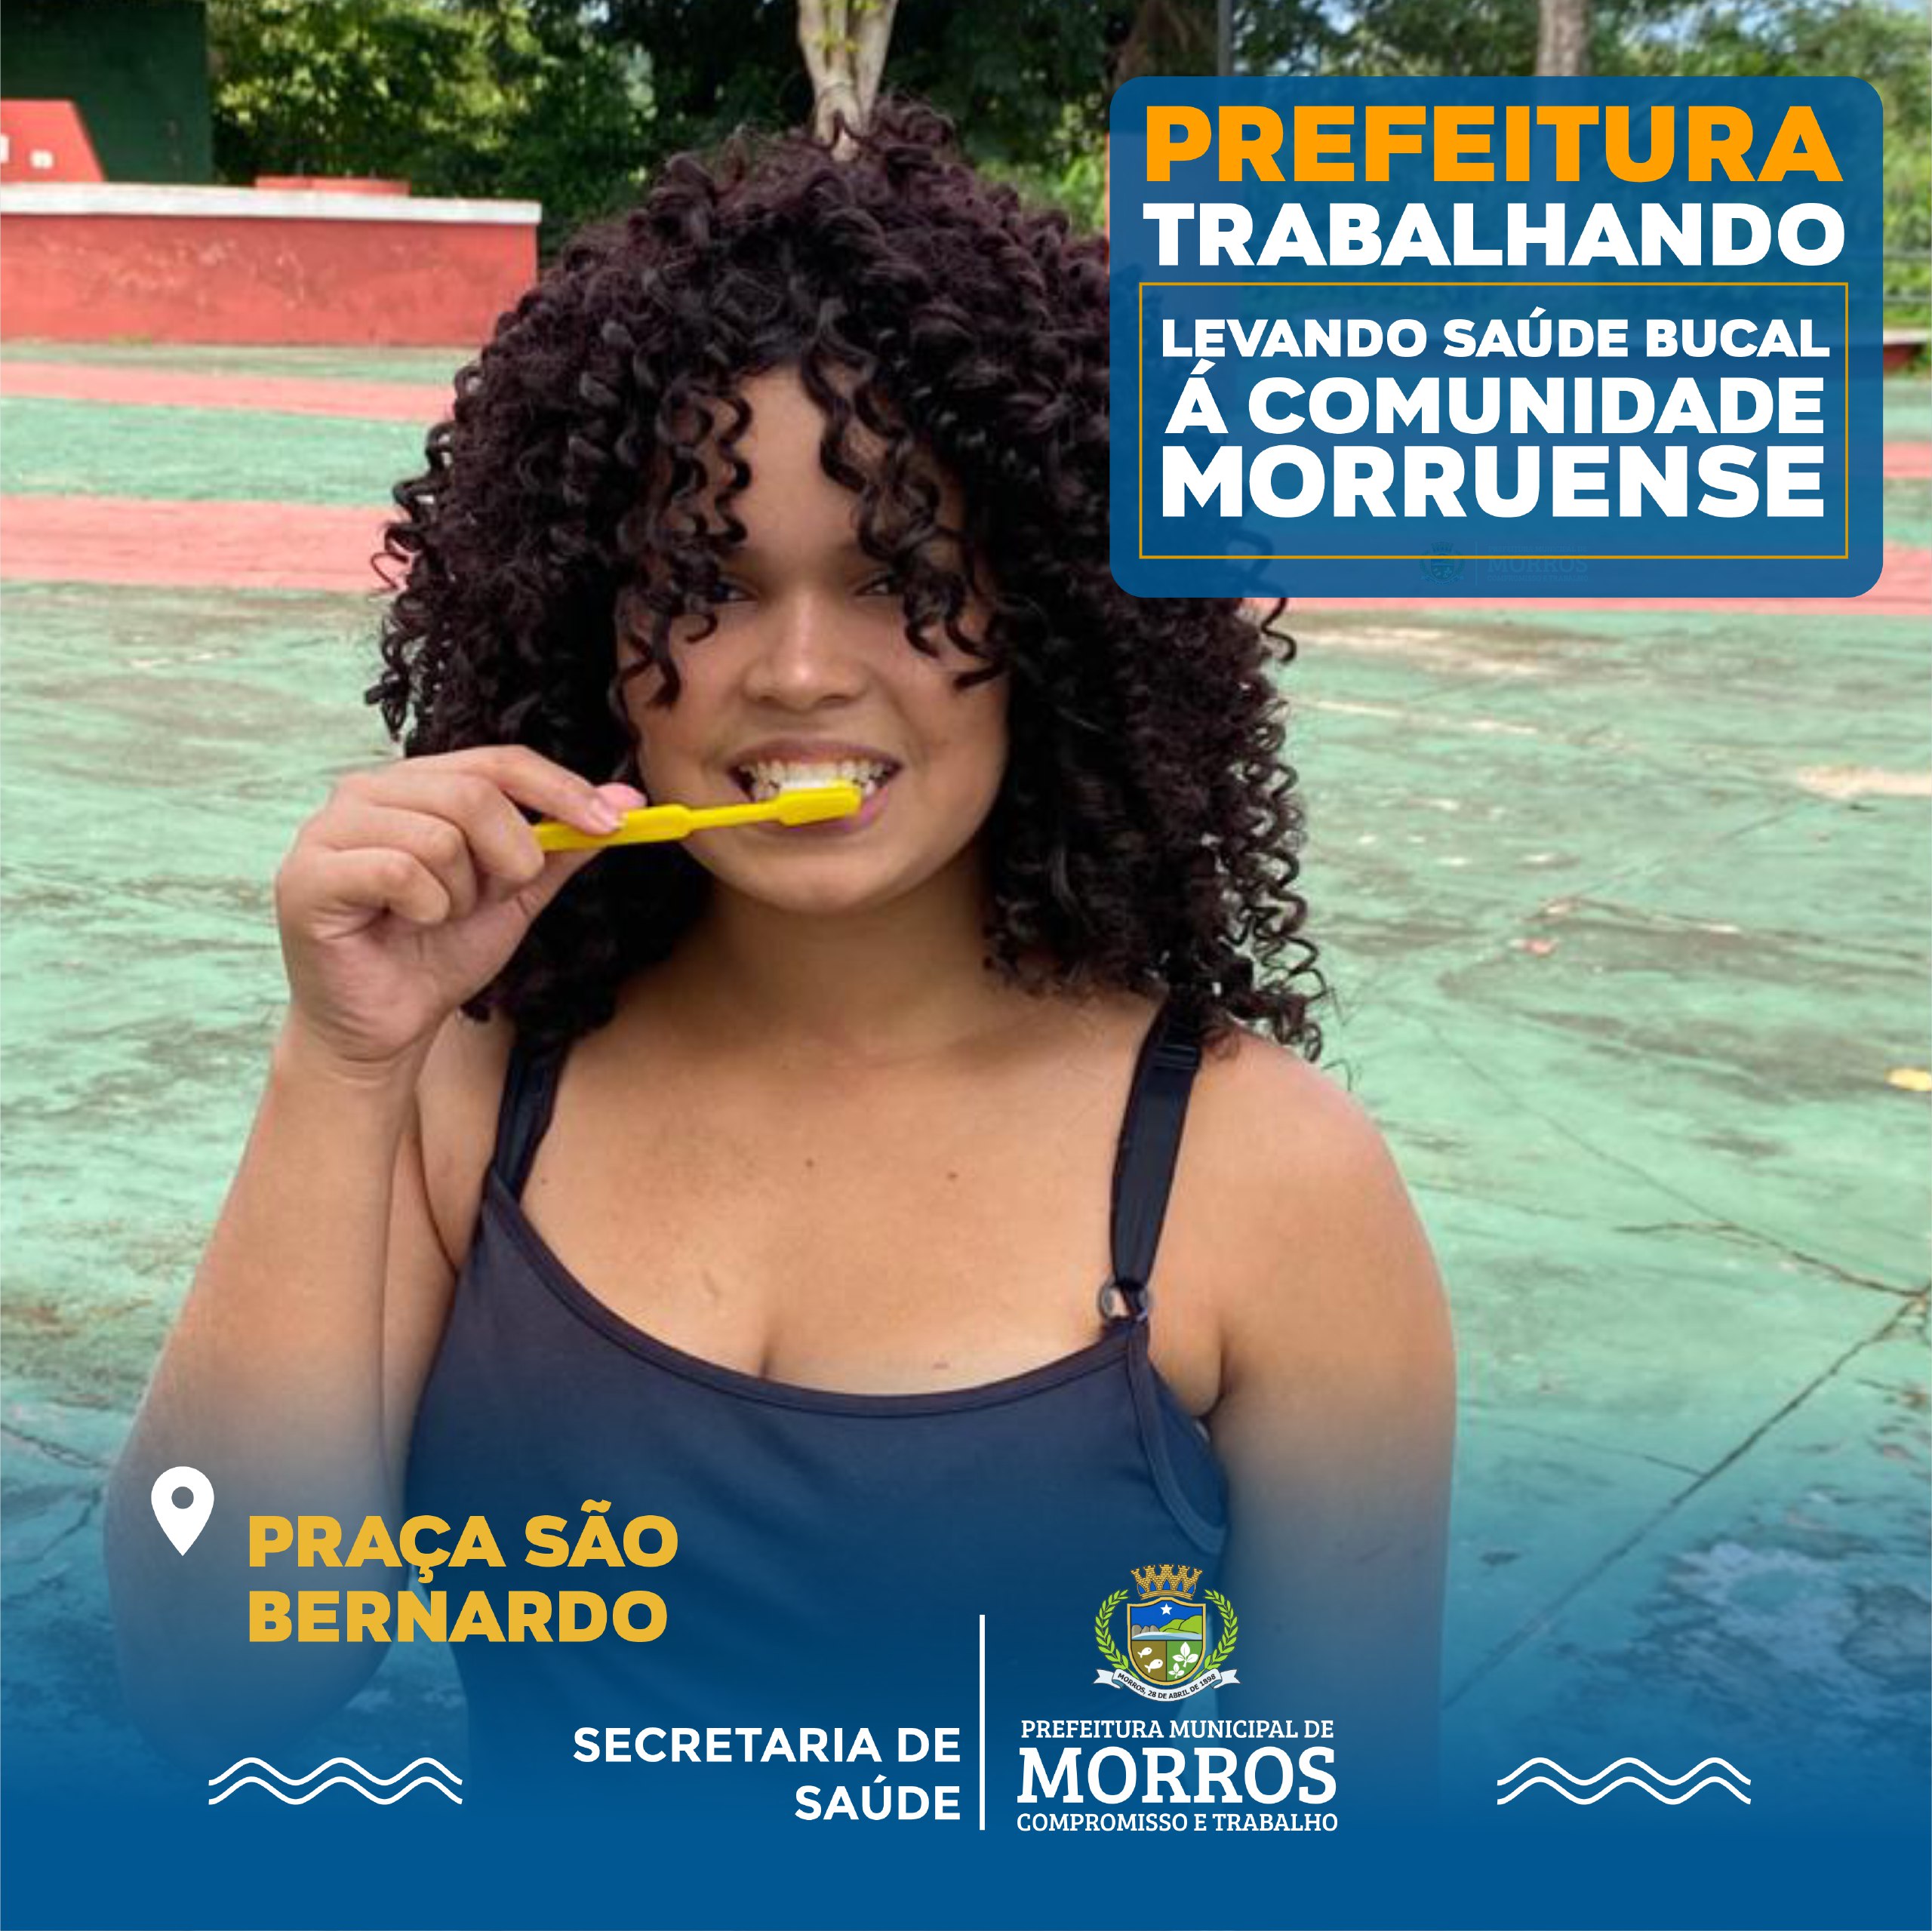 A Prefeitura Municipal de Morros, através da Secretaria de Saúde segue realizando semanalmente ações de saúde bucal por todo nosso município